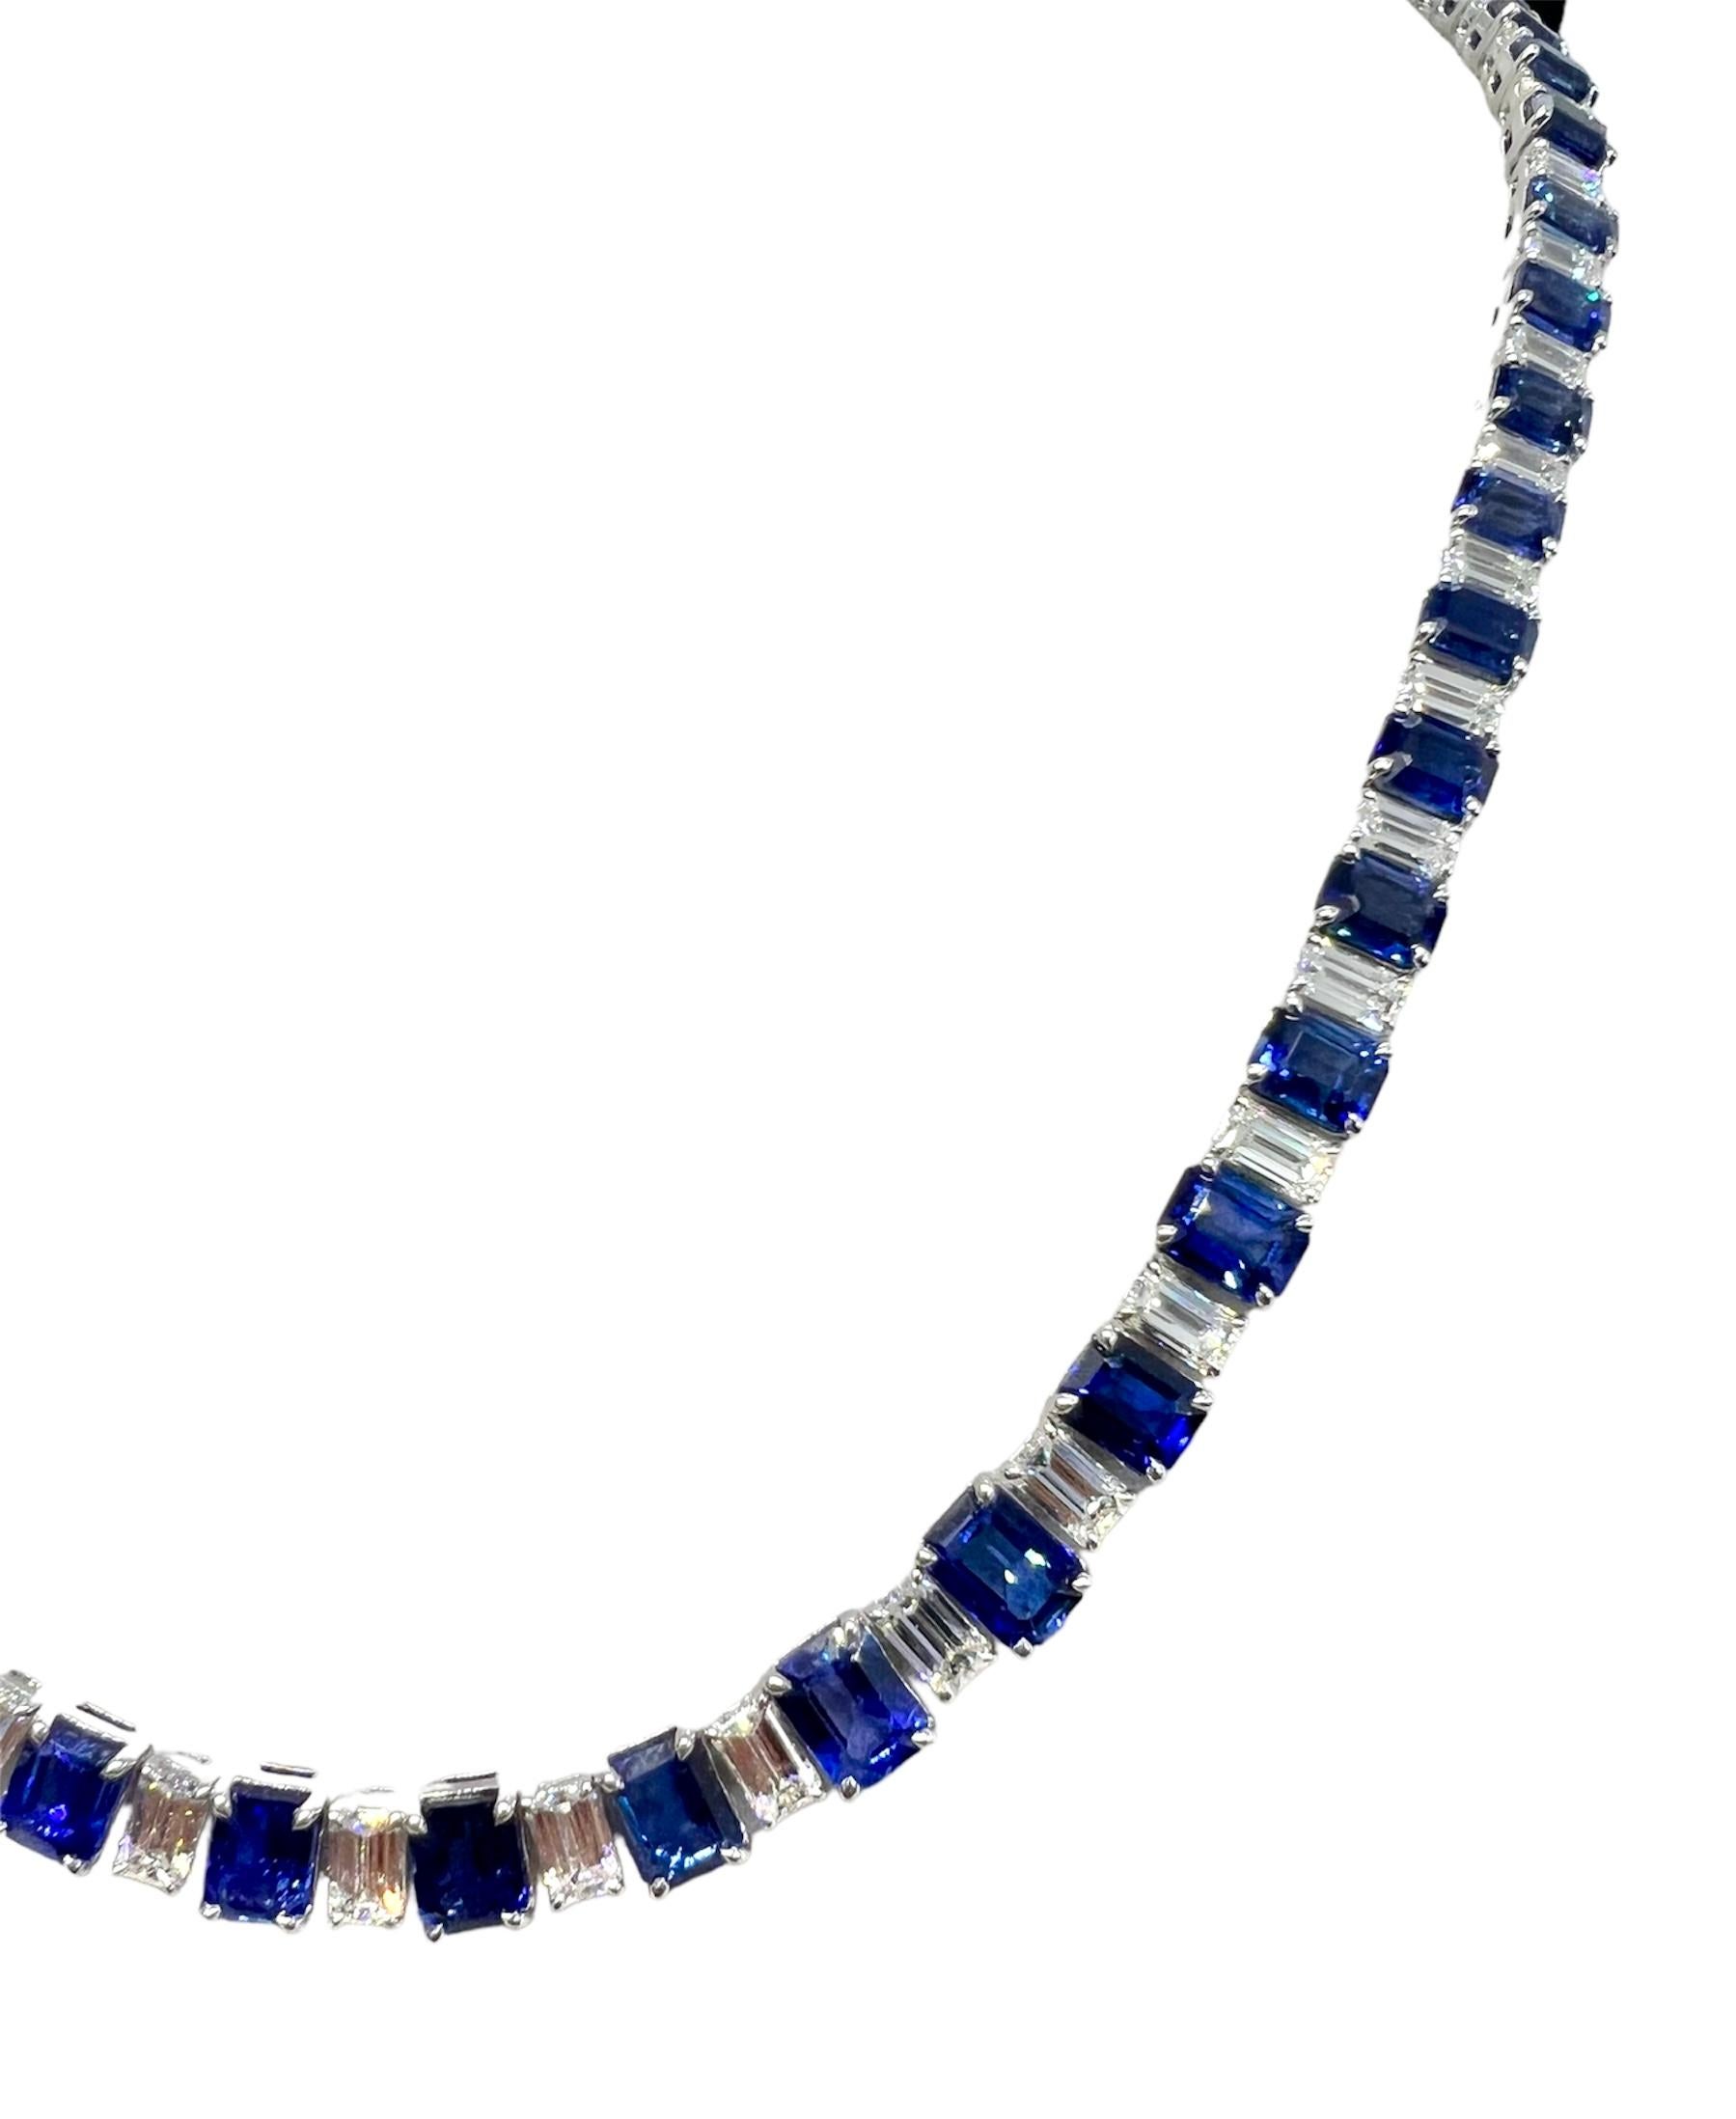 Ein Platin-Collier mit 10,96 Karat Diamanten und 32,24 Karat blauem Saphir.

Sophia D von Joseph Dardashti LTD ist seit 35 Jahren weltweit bekannt und lässt sich vom klassischen Art-Déco-Design inspirieren, das mit modernen Fertigungstechniken